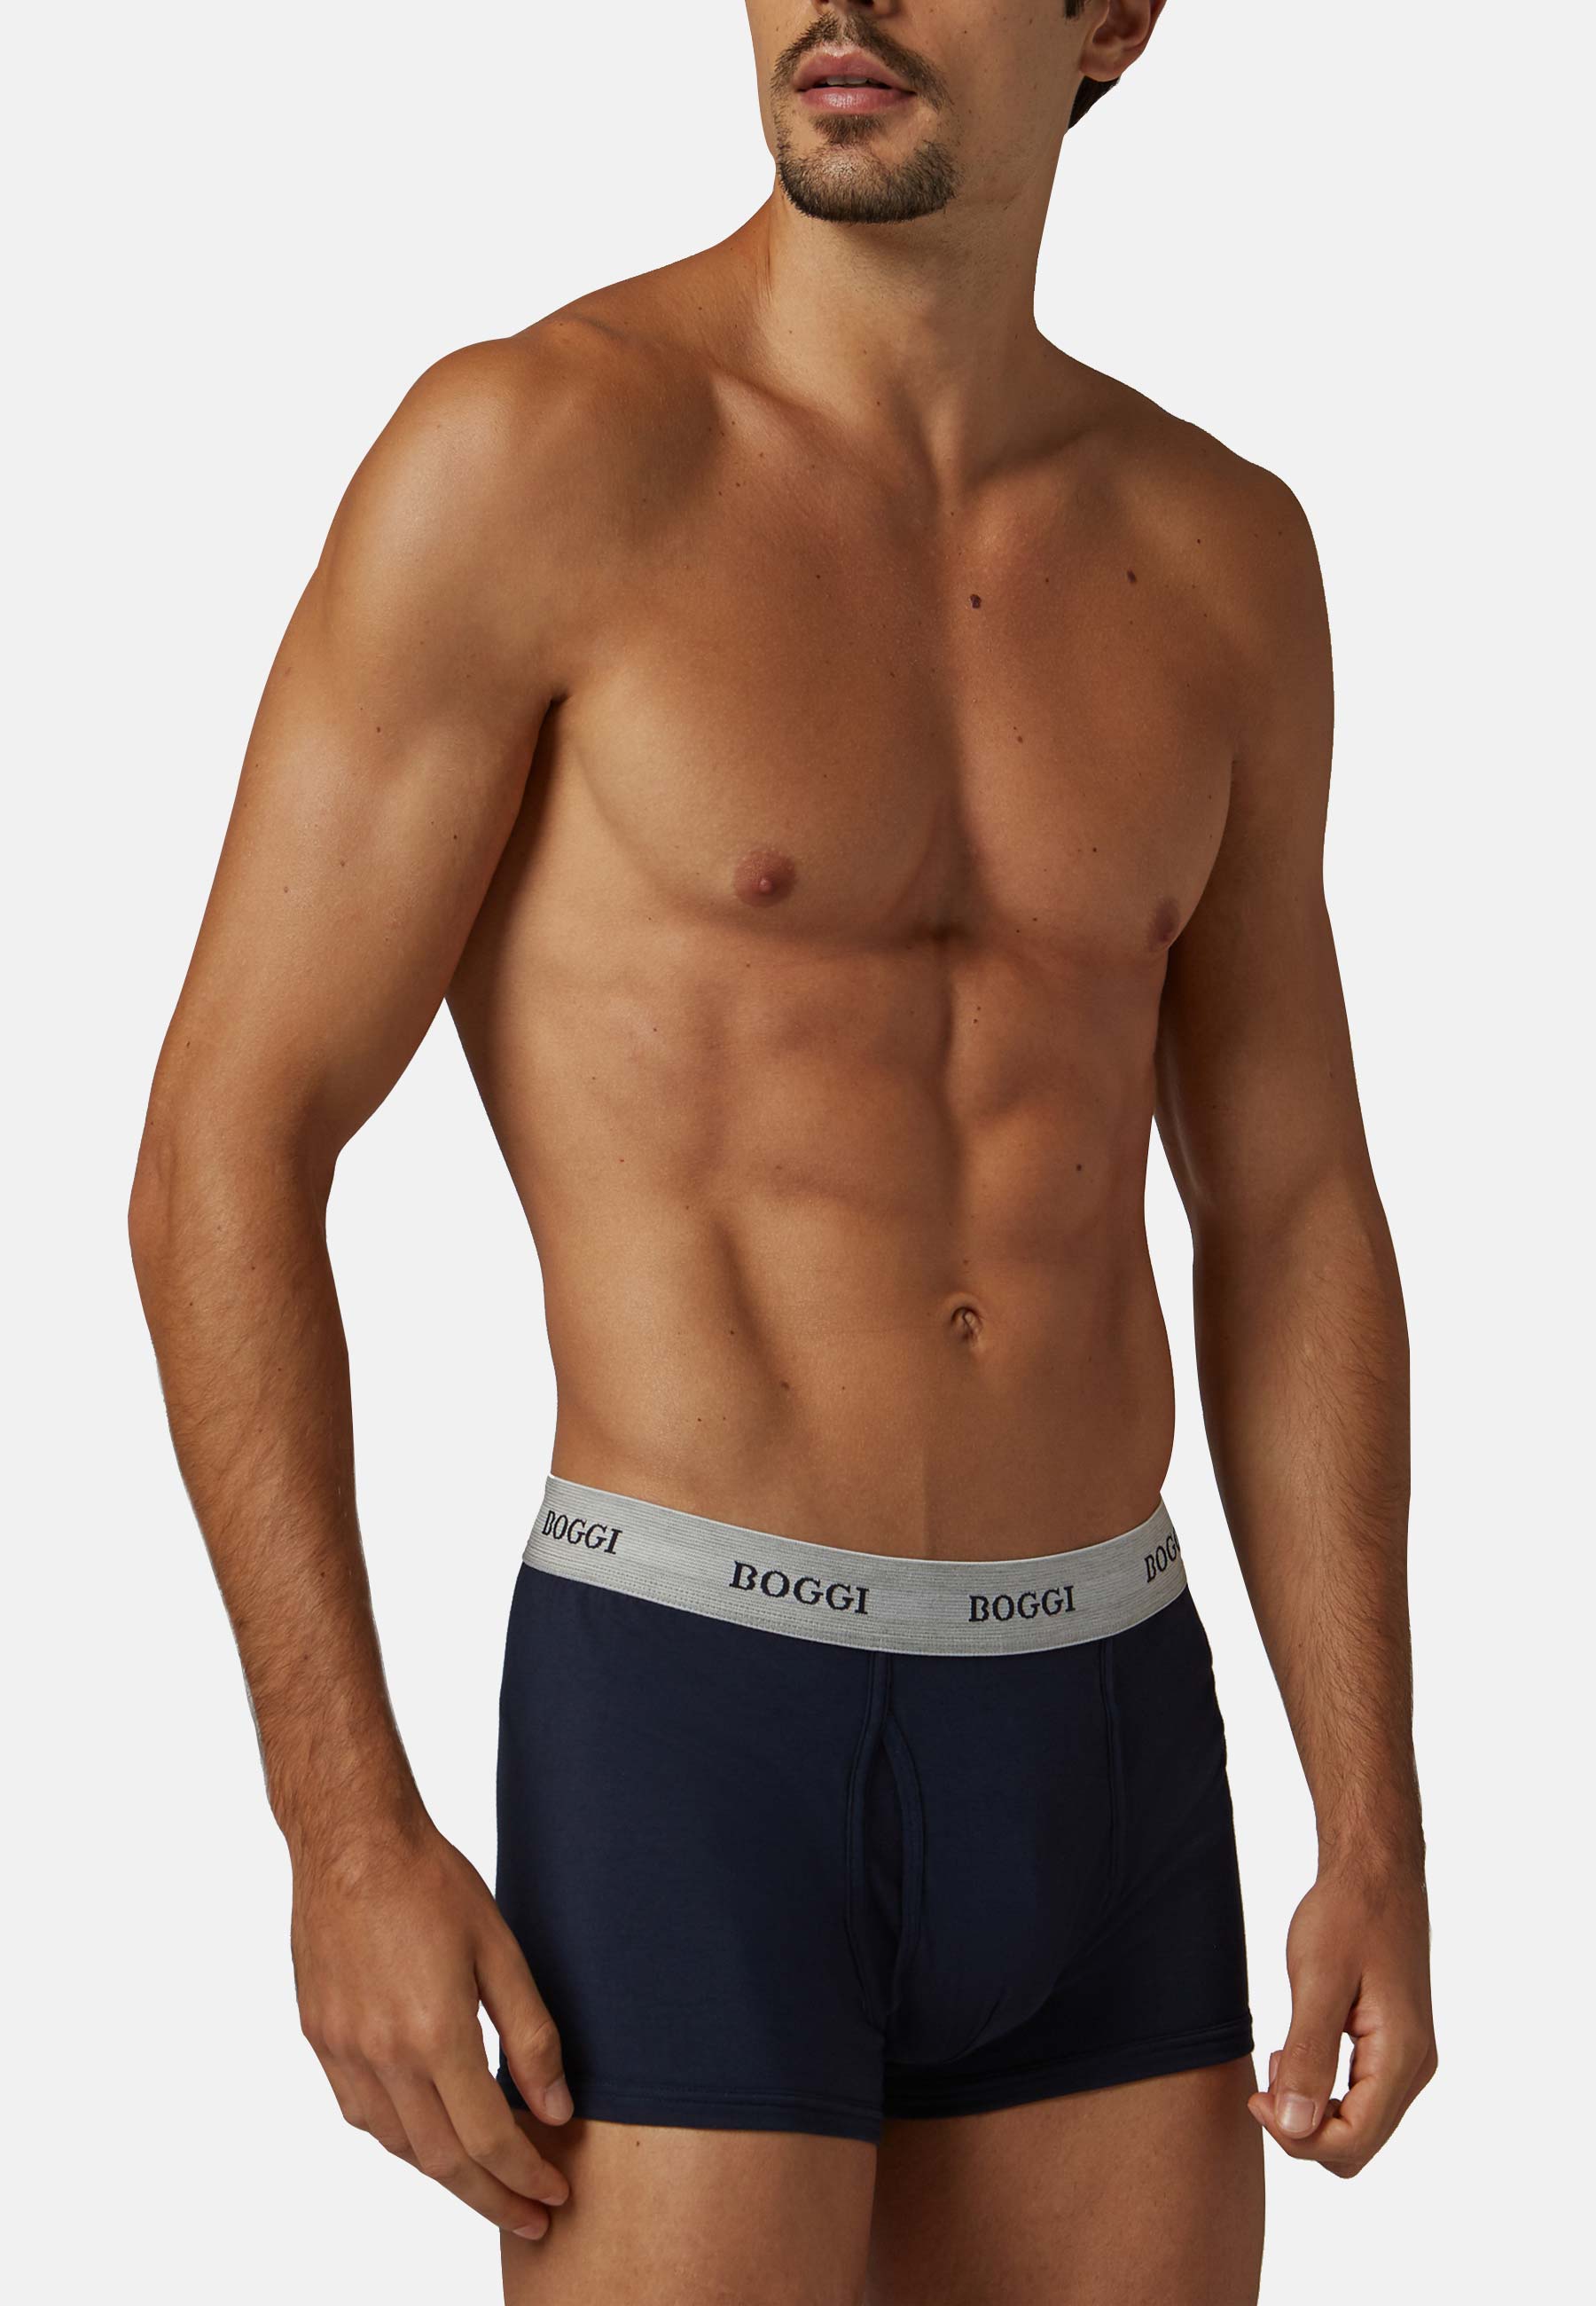  Men's Boxer Shorts - XLT / Men's Boxer Shorts / Men's